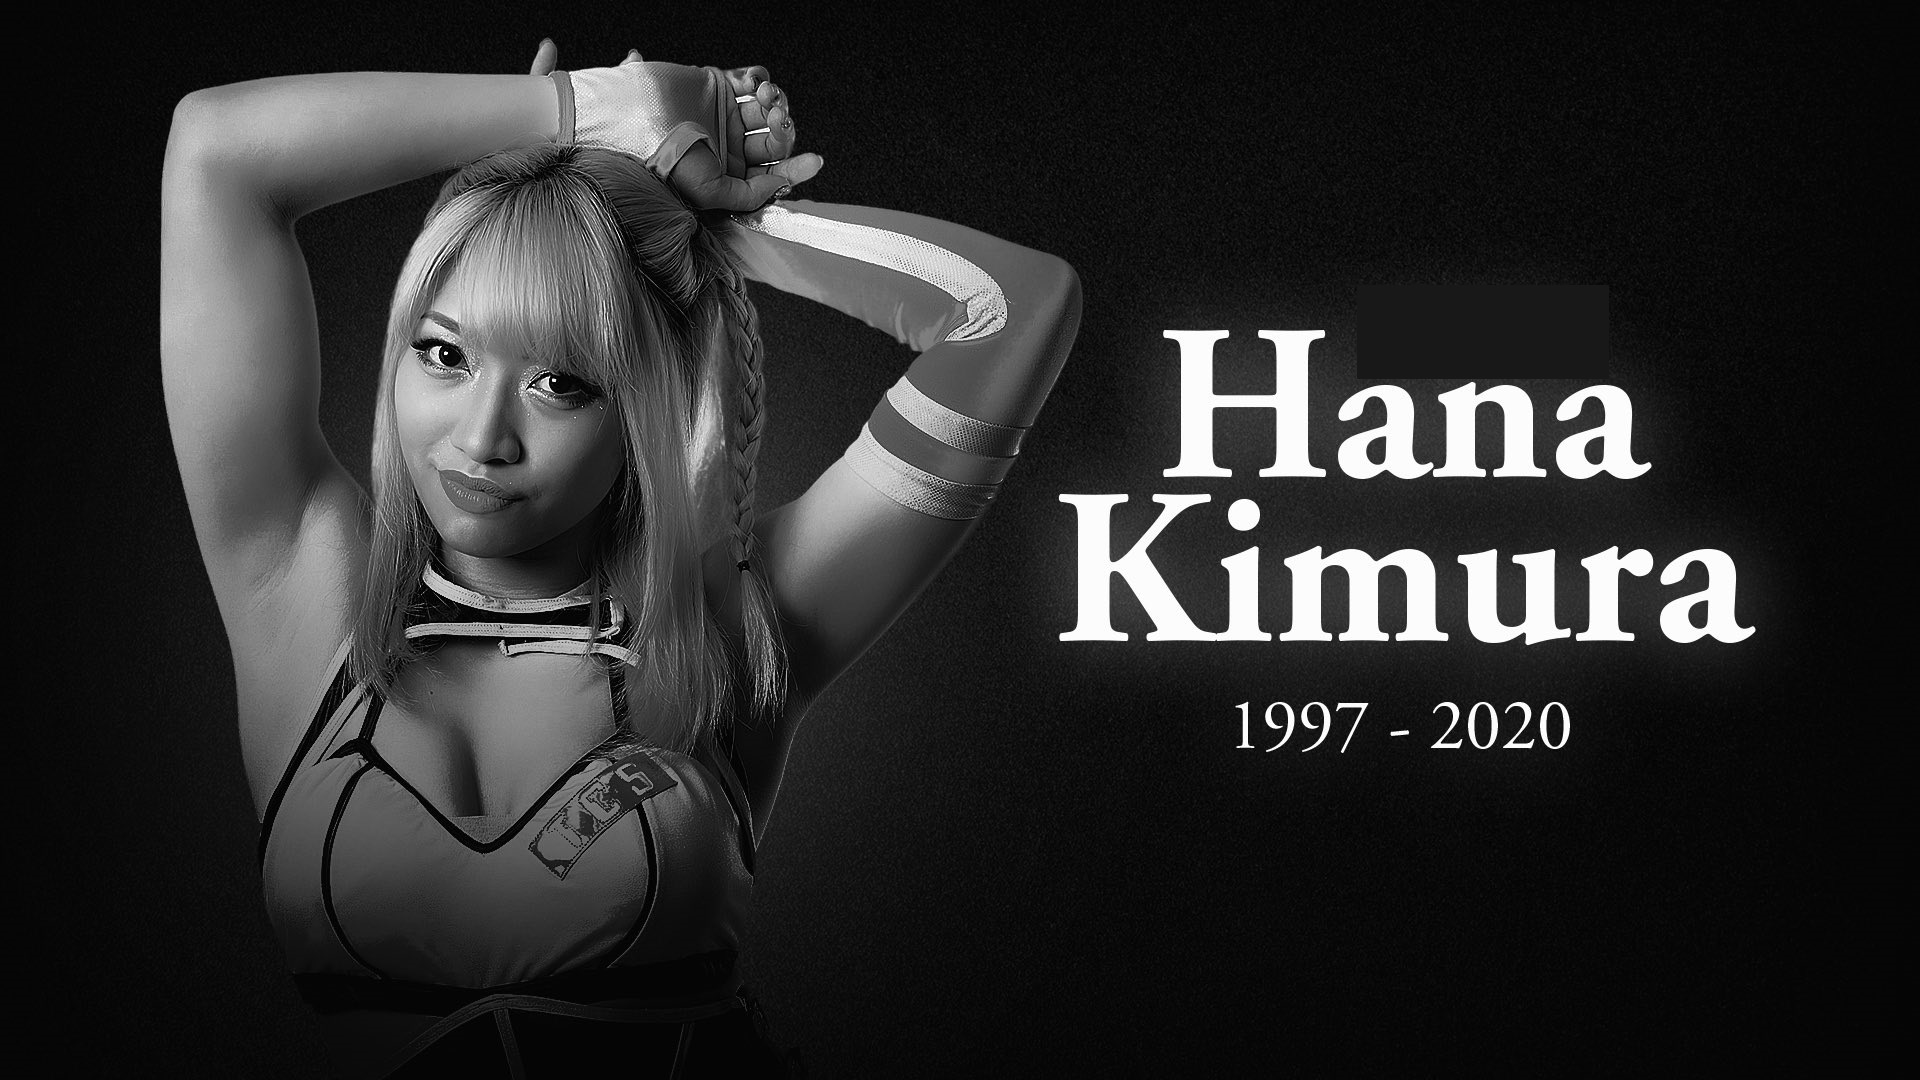 Japanese pro wrestler Hana Kimura dies aged 22